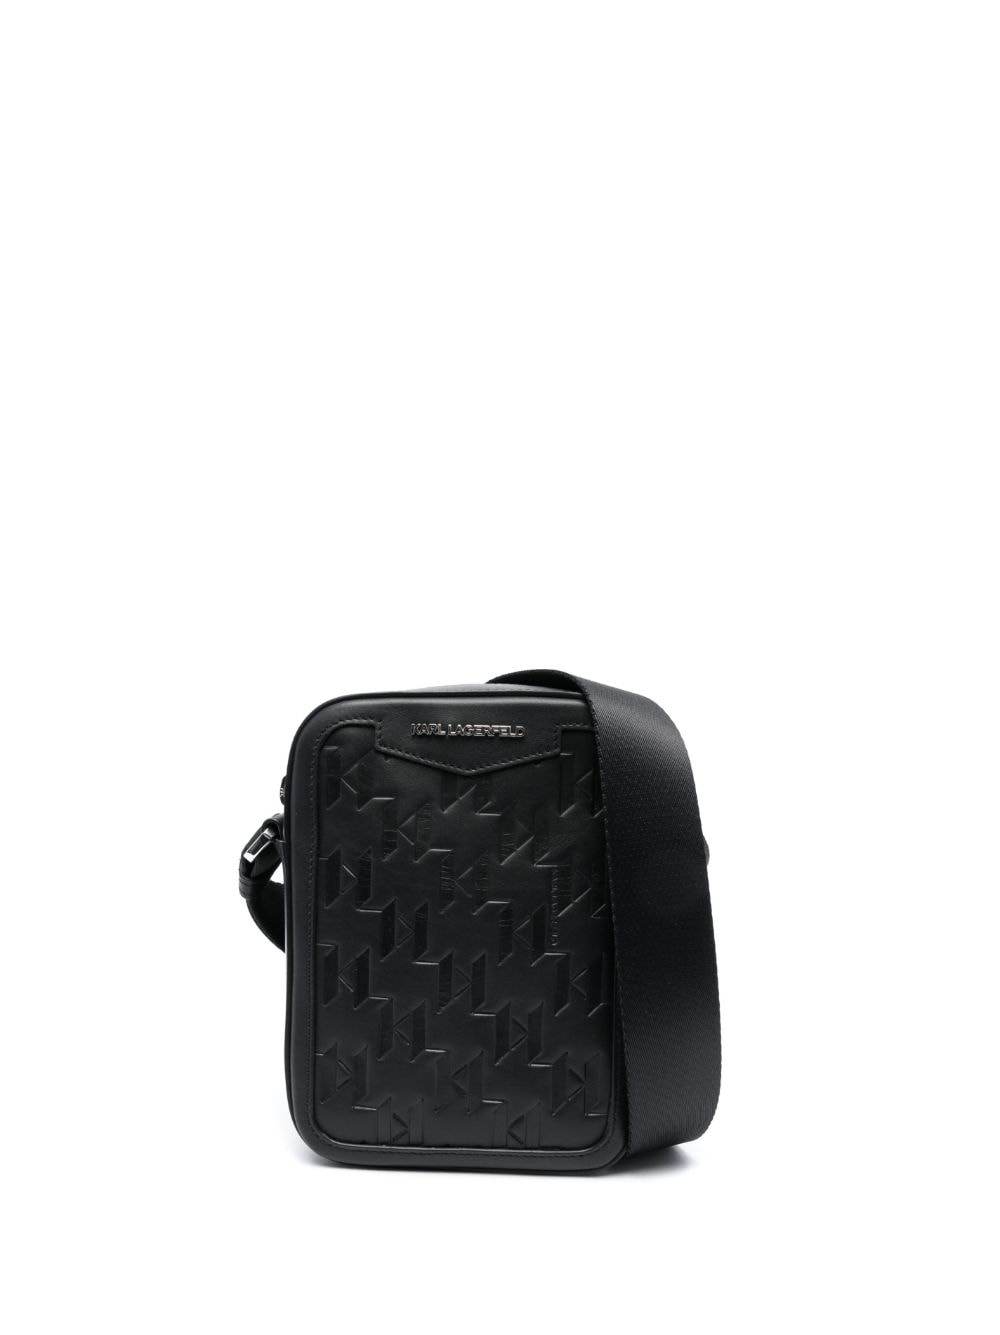 Karl Lagerfeld K/loom Leather Crossbody Bag In Black